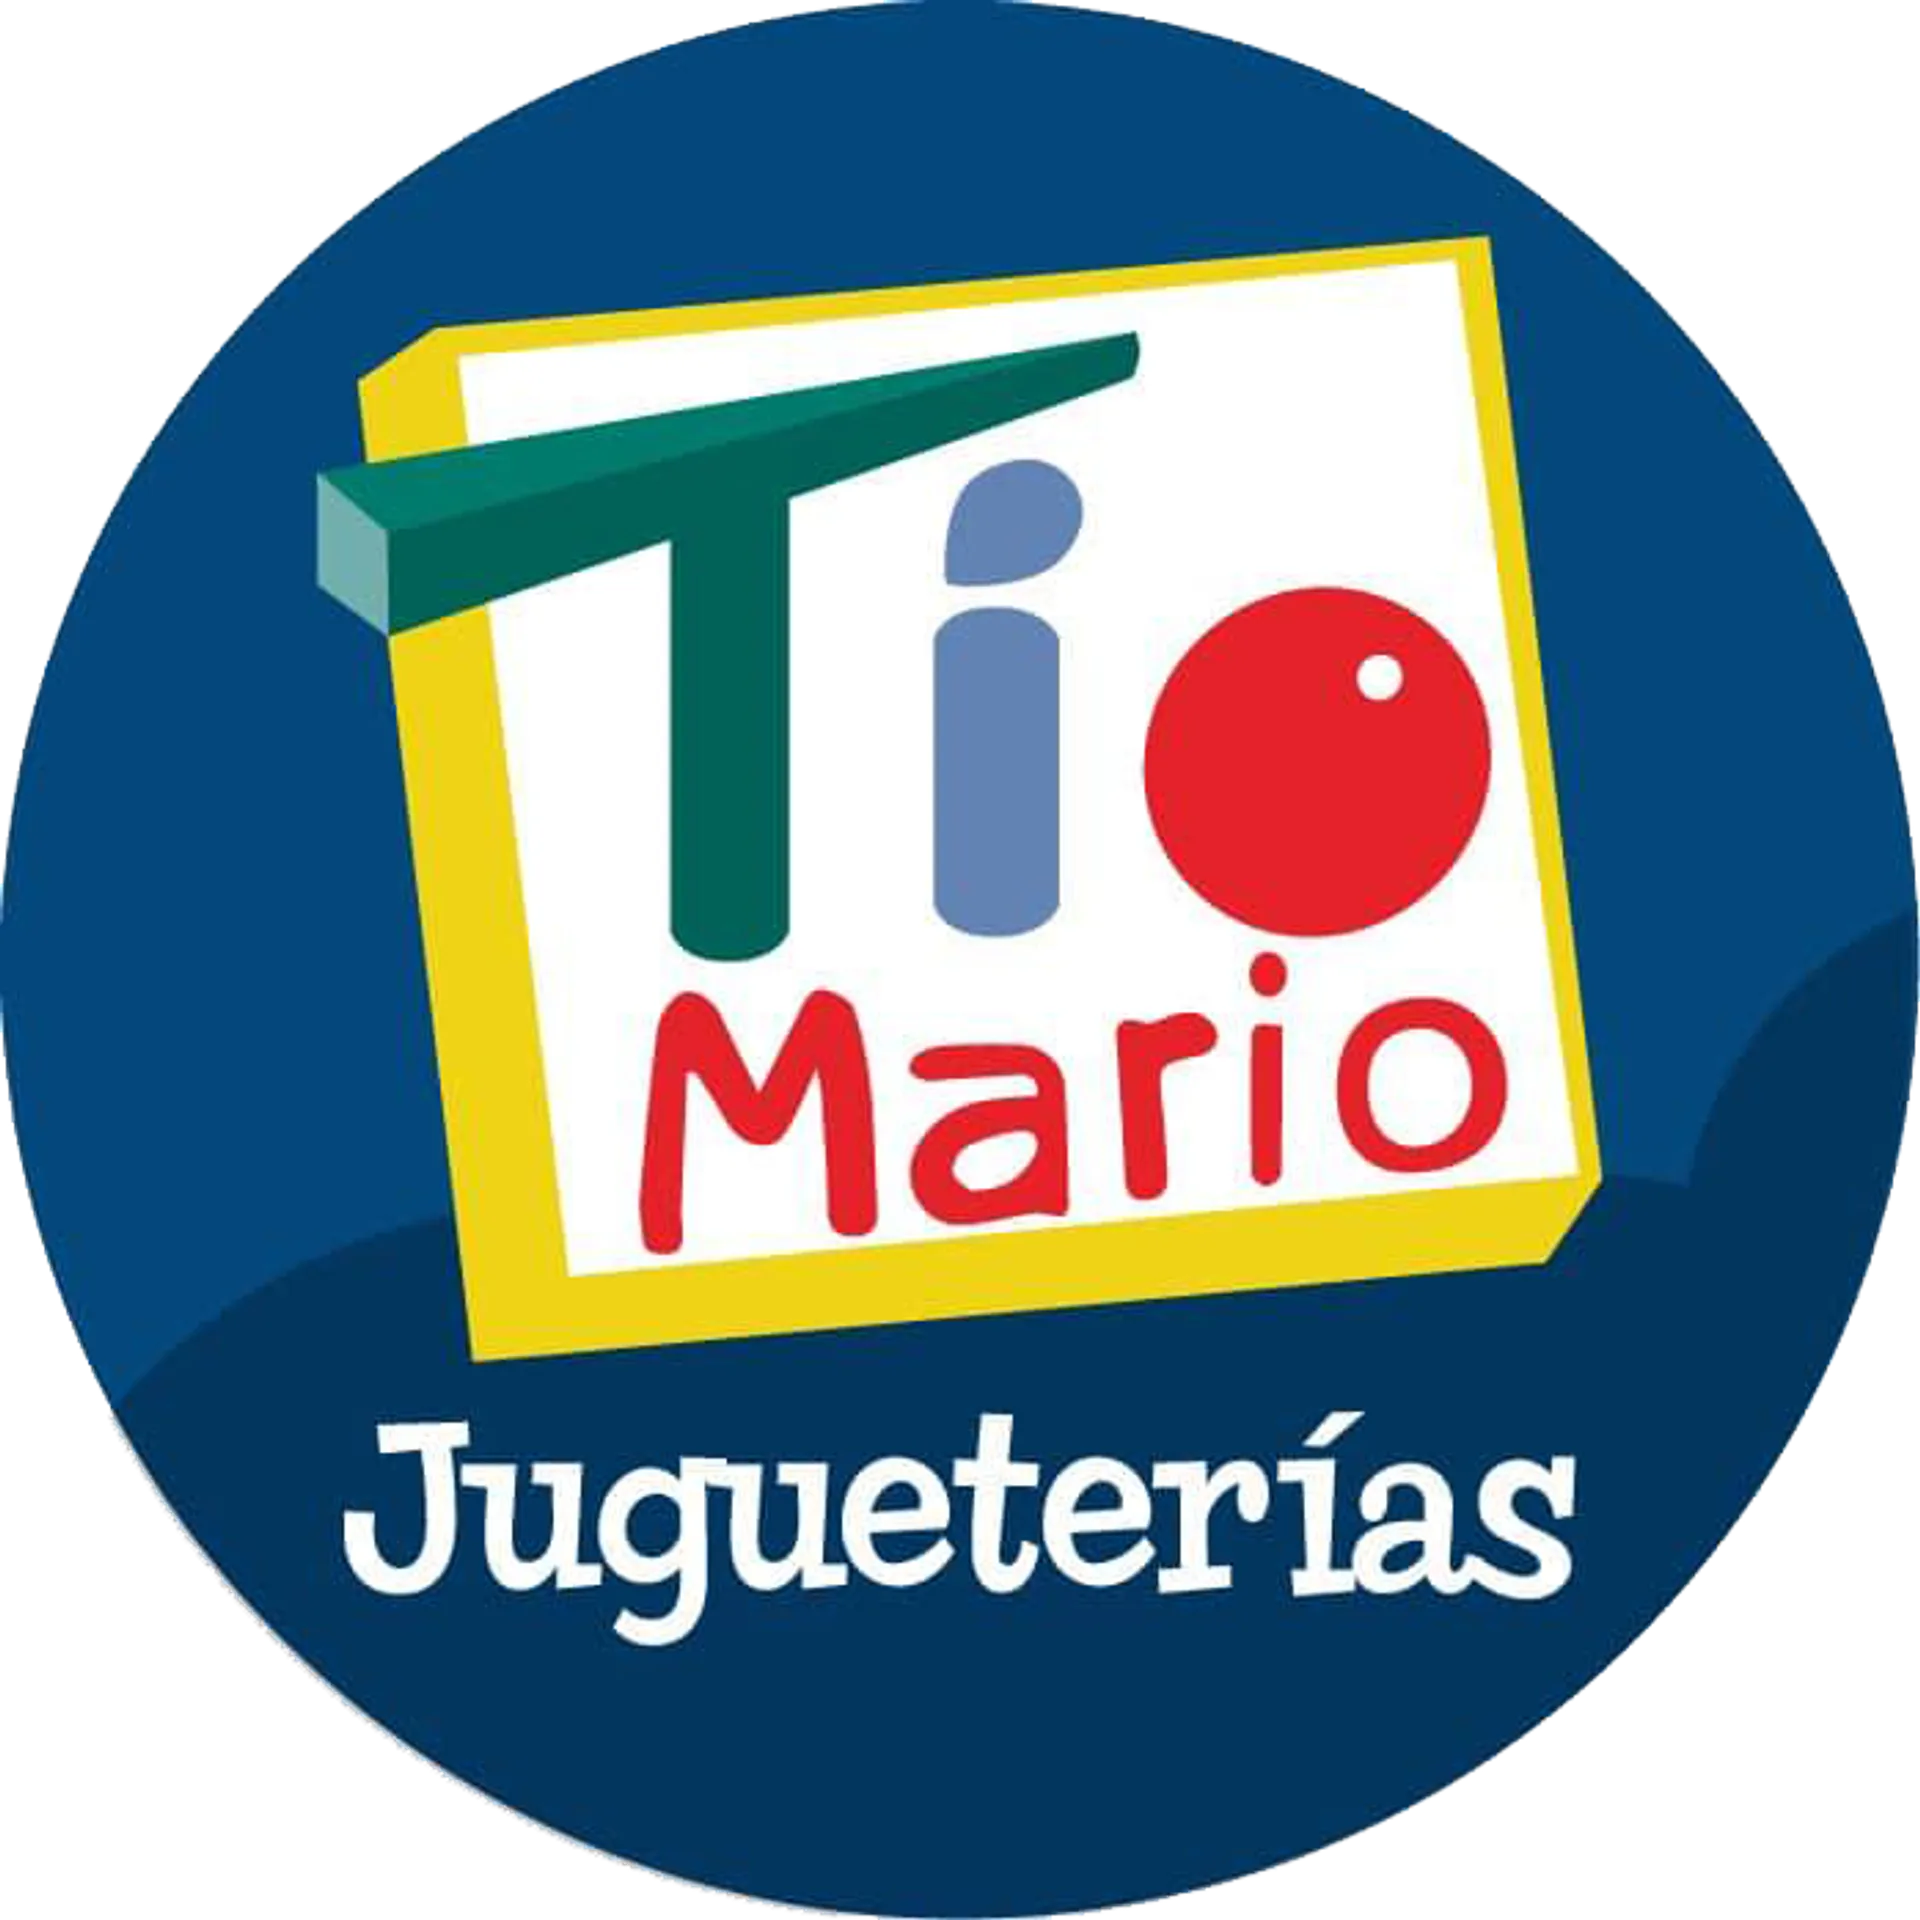 JUGUETERÍAS TÍO MARIO logo